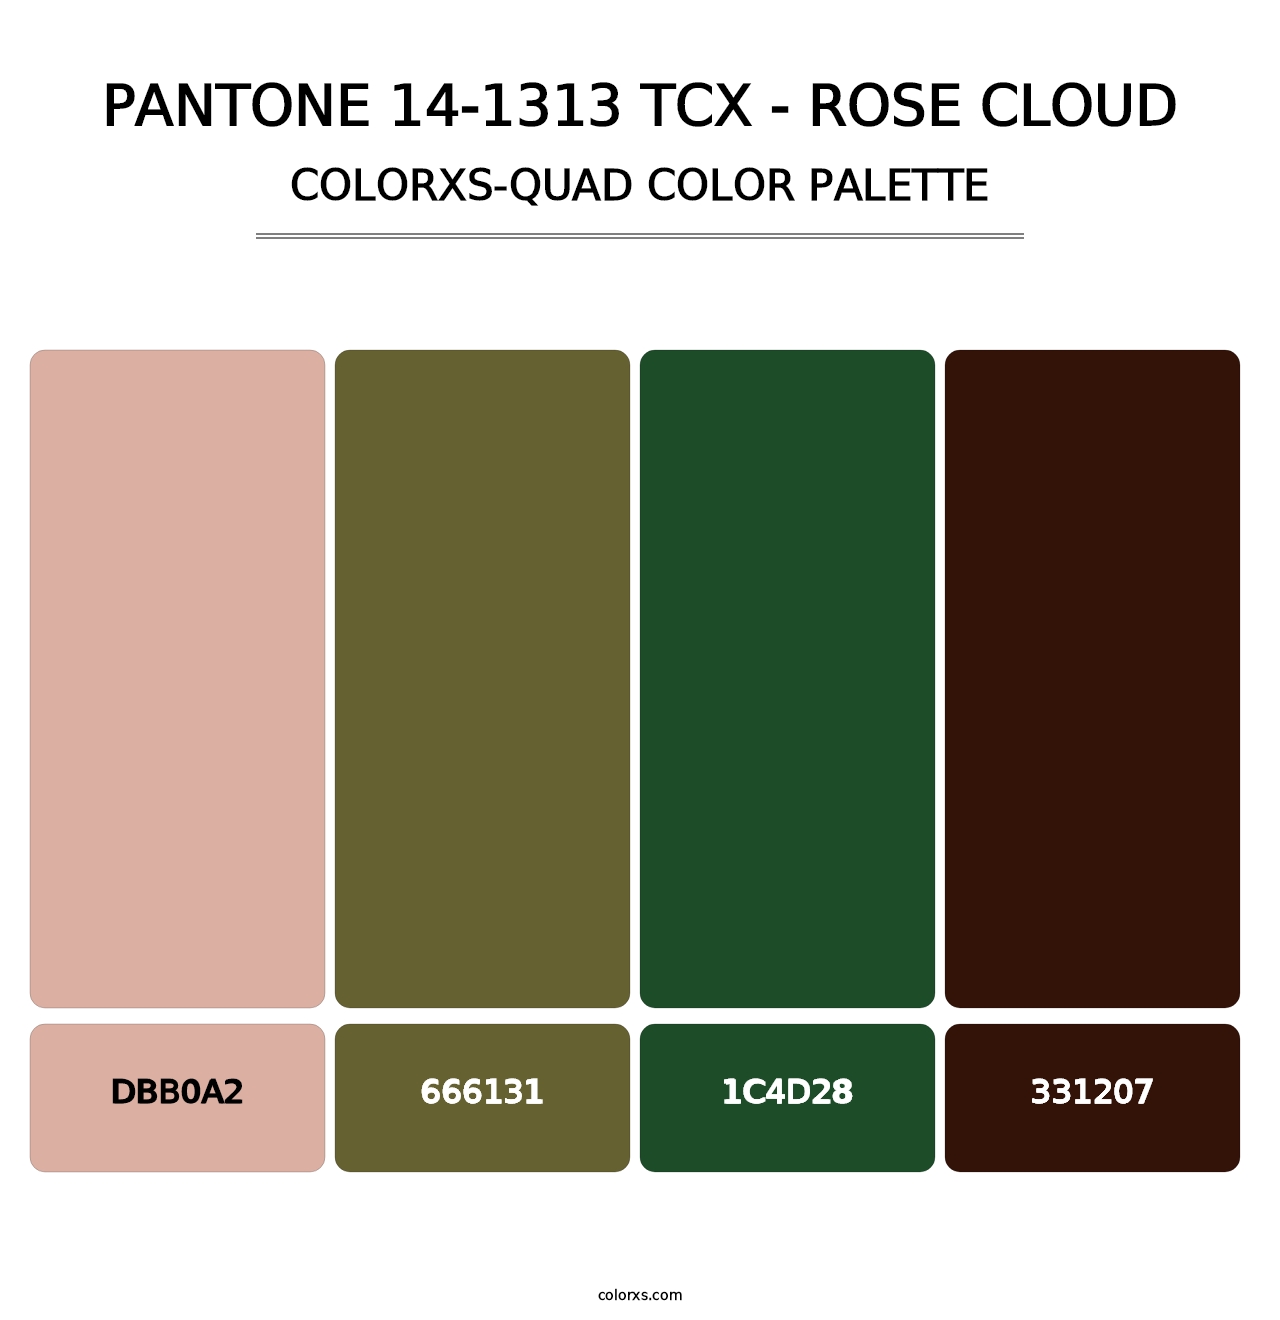 PANTONE 14-1313 TCX - Rose Cloud - Colorxs Quad Palette